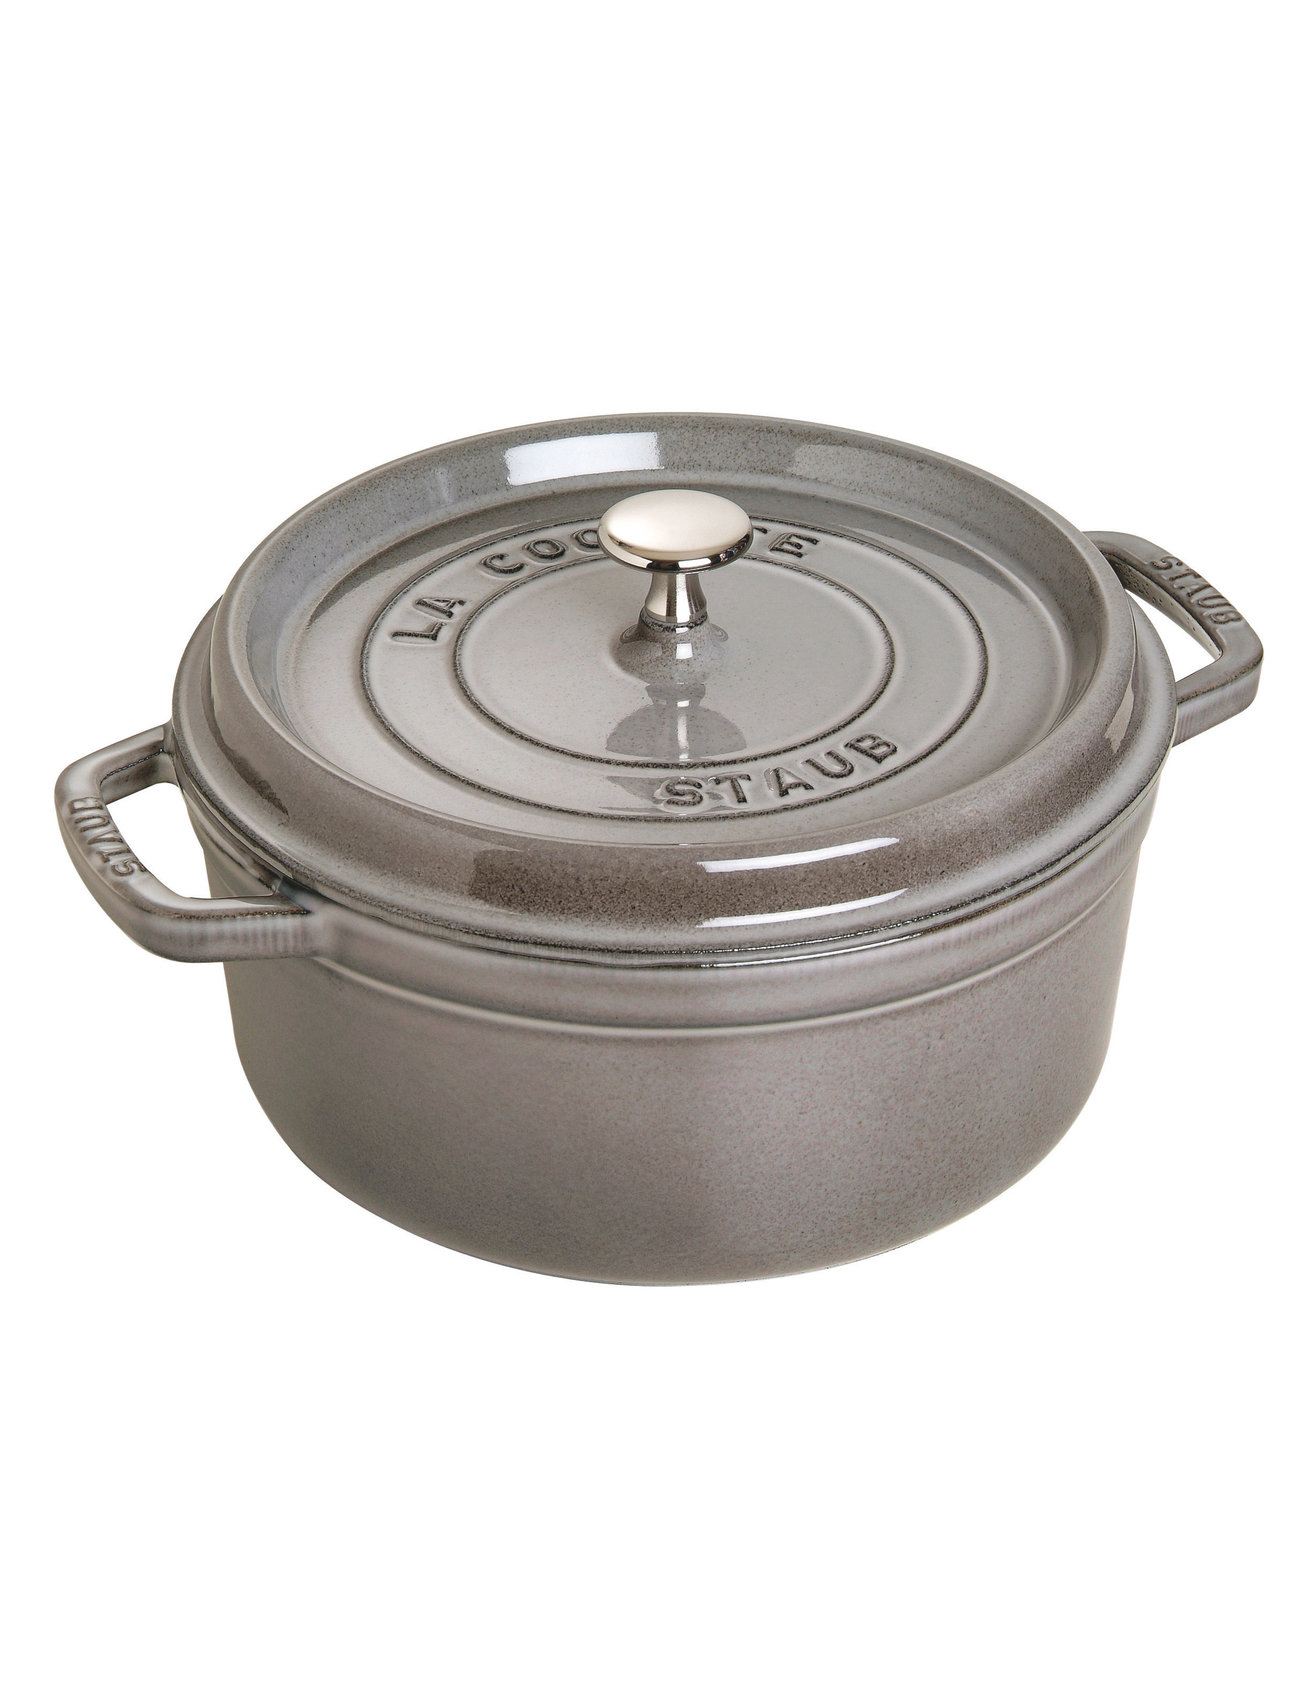 La Cocotte - Round Cast Iron Home Kitchen Pots & Pans Casserole Dishes Beige STAUB